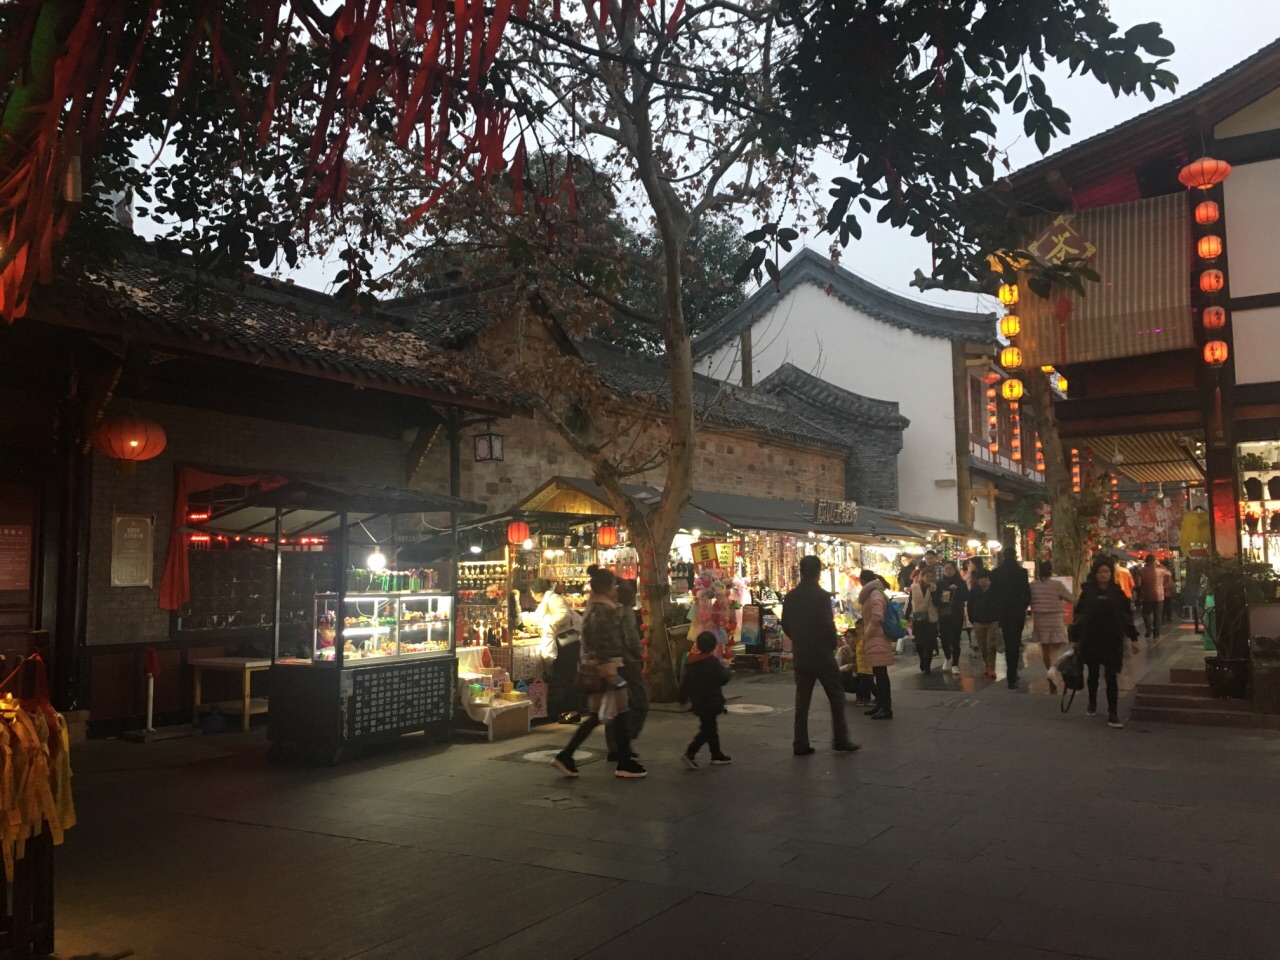 【携程攻略】德阳德阳文庙景点,很棒的小吃集聚区，满街超过50种类的小吃汇集成一条约300米长的步行…